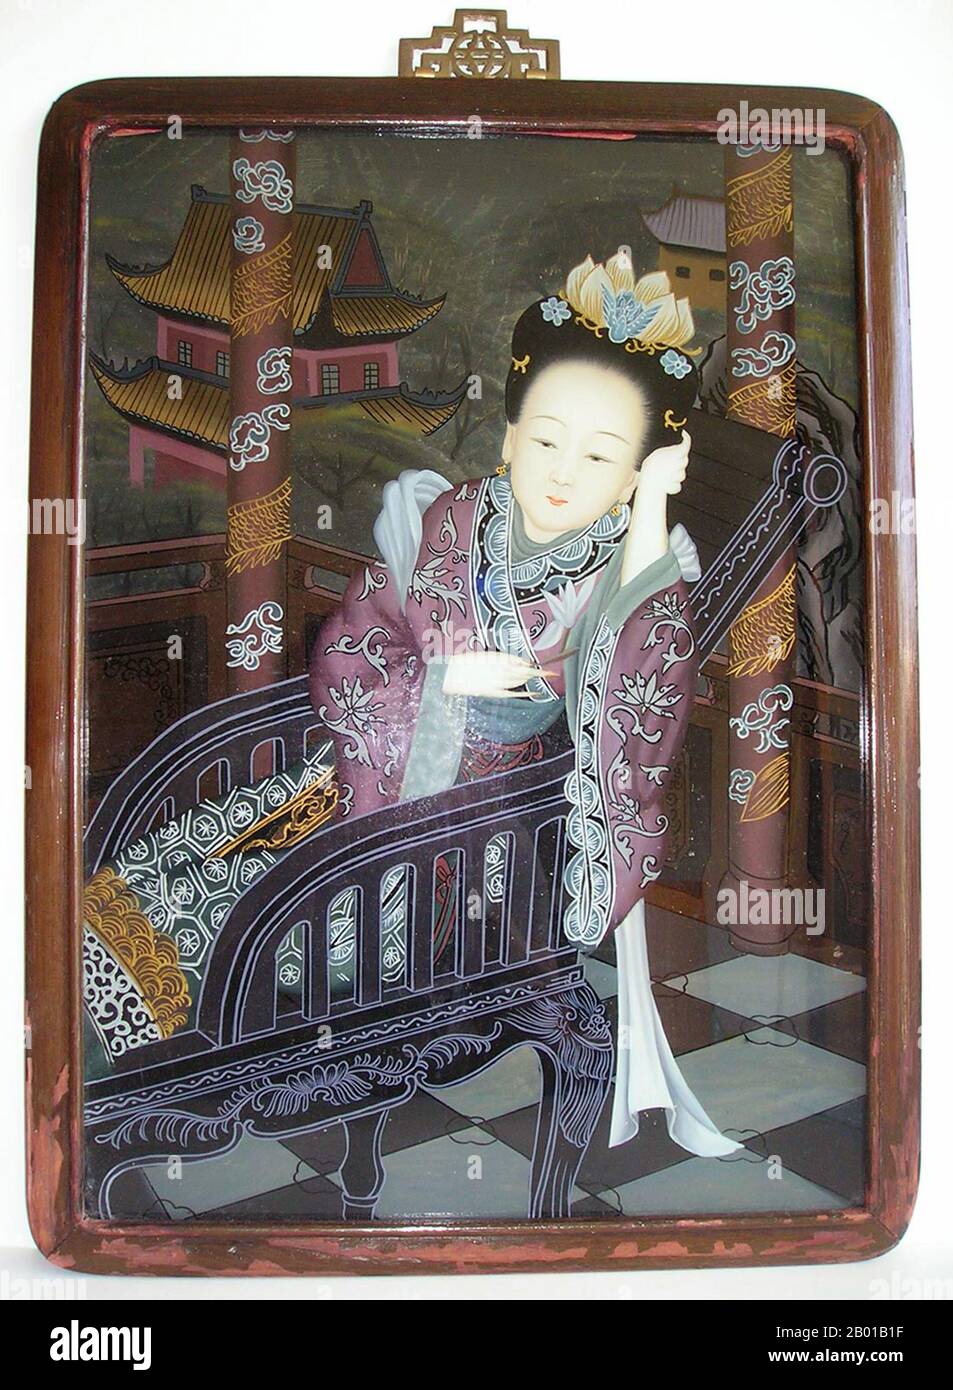 Cina: Pittura a specchio di una donna reclinata in una sedia, tardo dinastia Qing, c.. 1840-1860. La pittura inversa sul vetro è una forma artistica che consiste nell'applicare la vernice a un pezzo di vetro e quindi visualizzare l'immagine girando il vetro e guardando attraverso il vetro l'immagine. Foto Stock